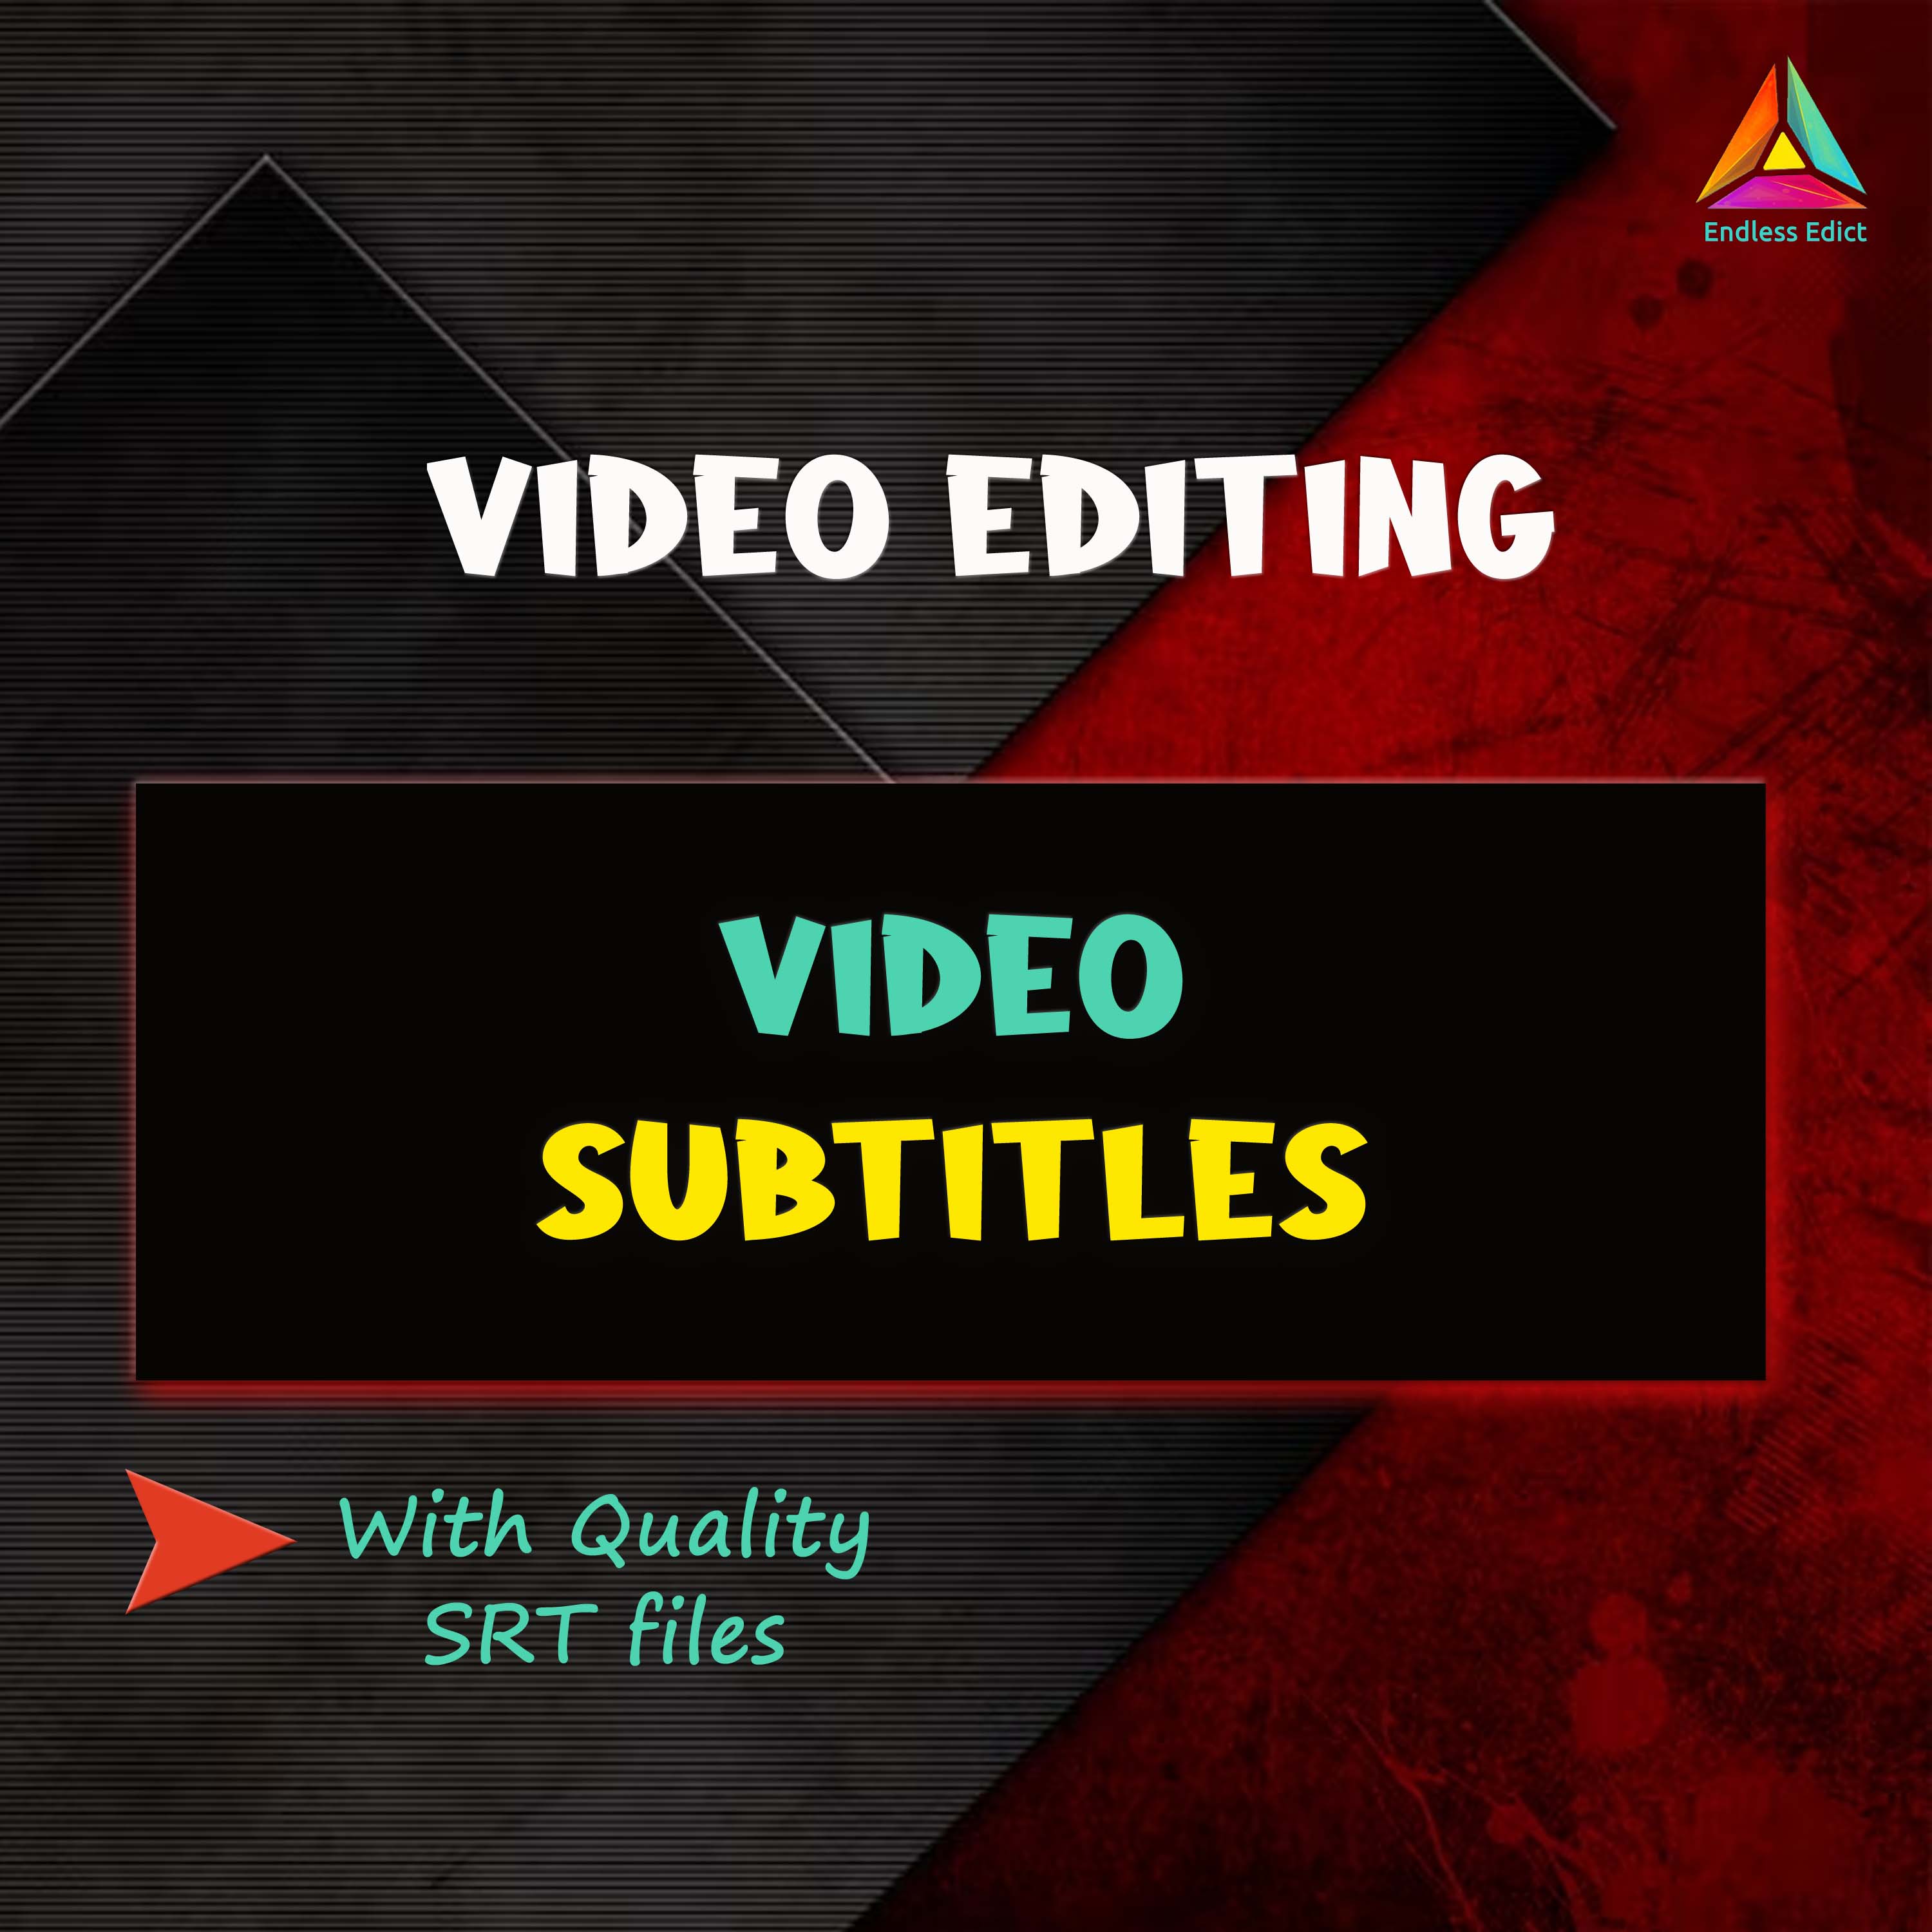 Professional Video Subtitling Services: Delivering SRT Files for Seamless Integration